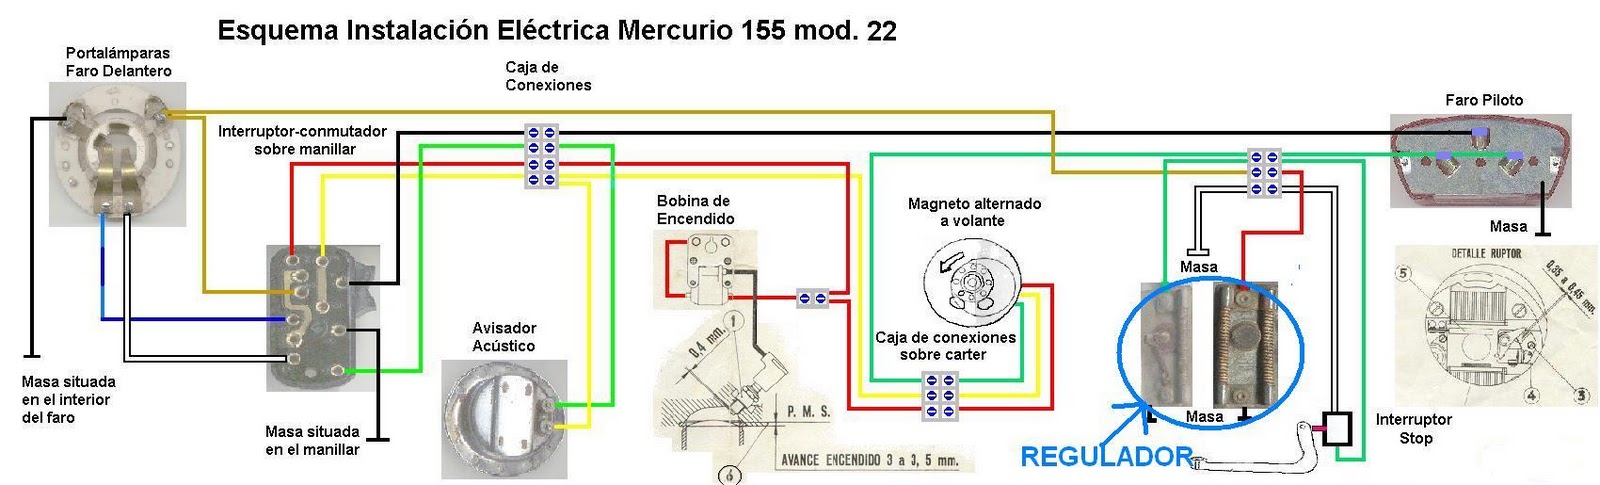 Esquema Electrico Mercurio 155